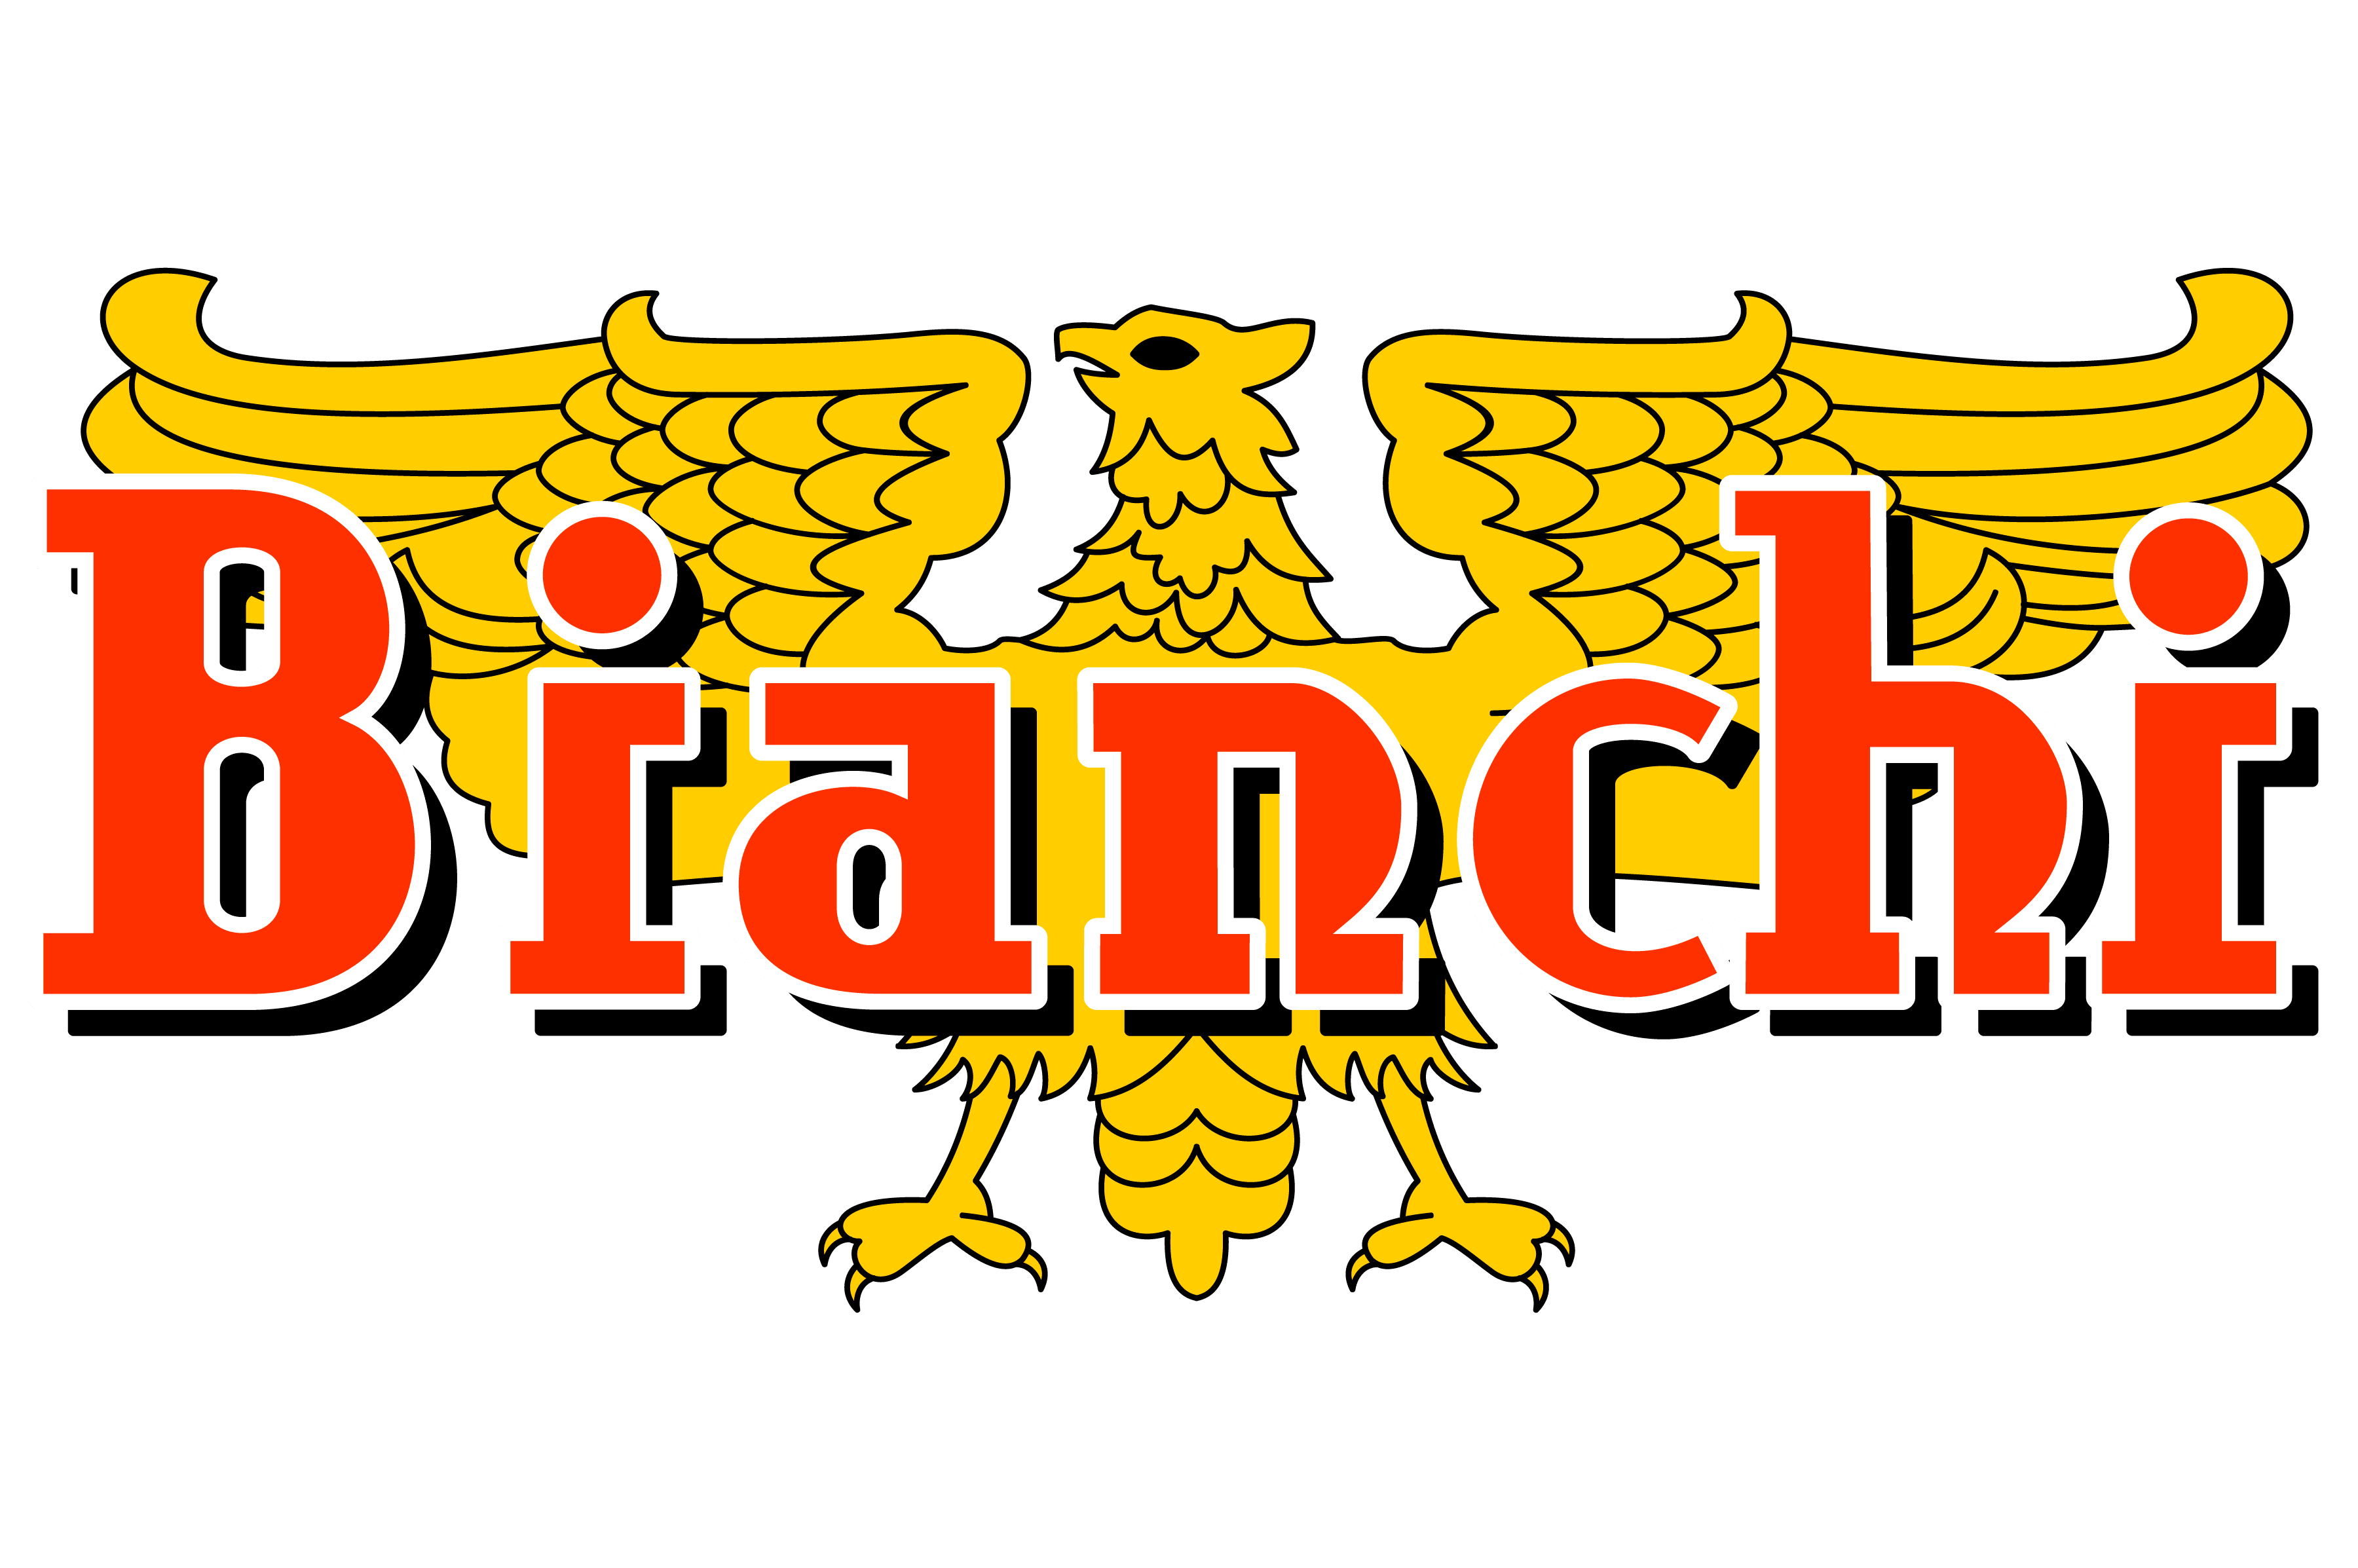 Bianchi Motorcycles Logo